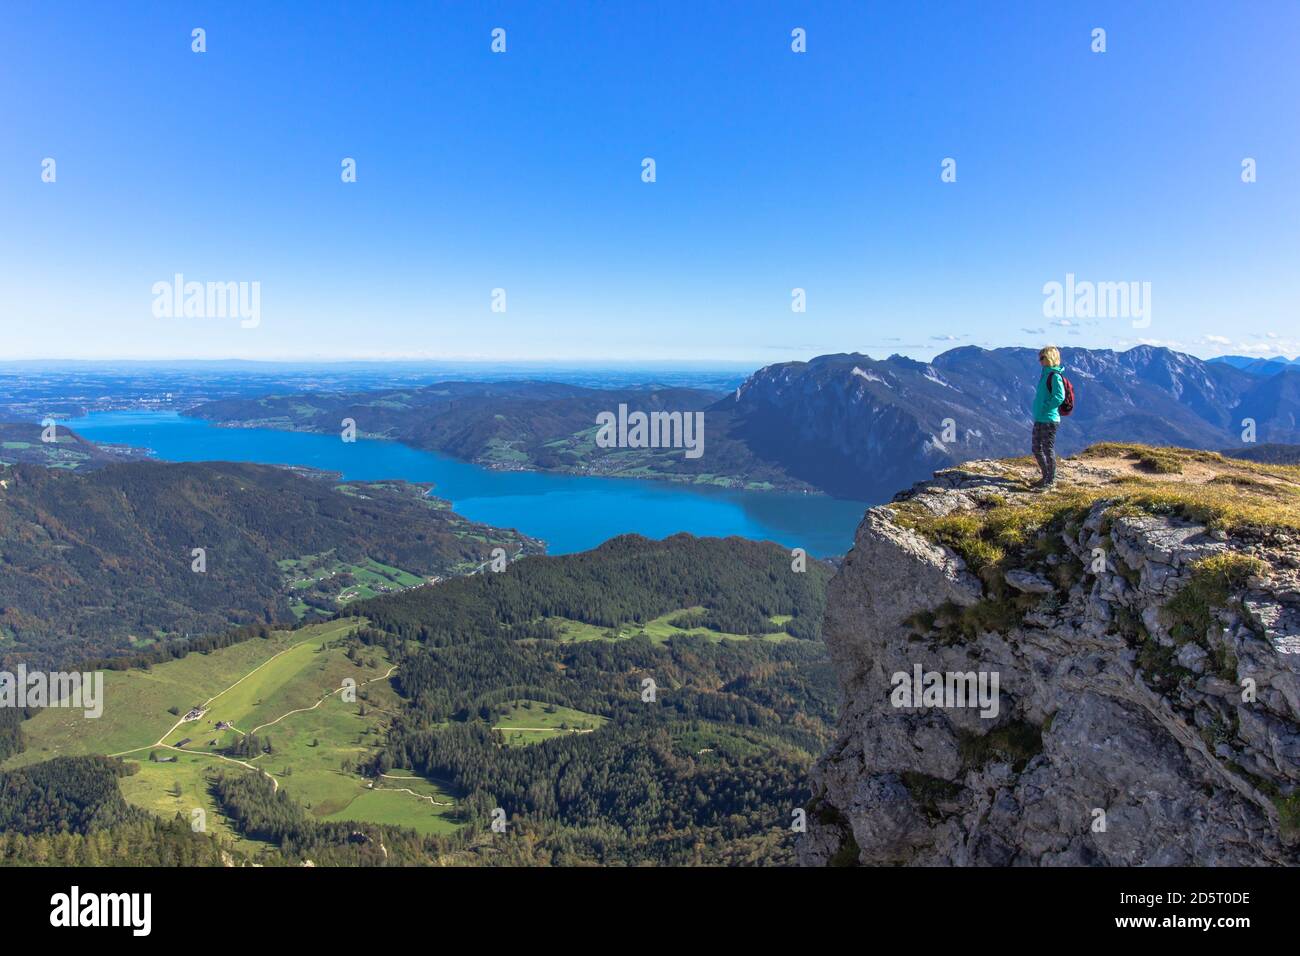 Ragazza attiva che riposa sulla cima delle Alpi, Austria.Backpacker godendo di vista del panorama di montagna e Lake.Hiking su luminoso sole day.Wander estate Foto Stock